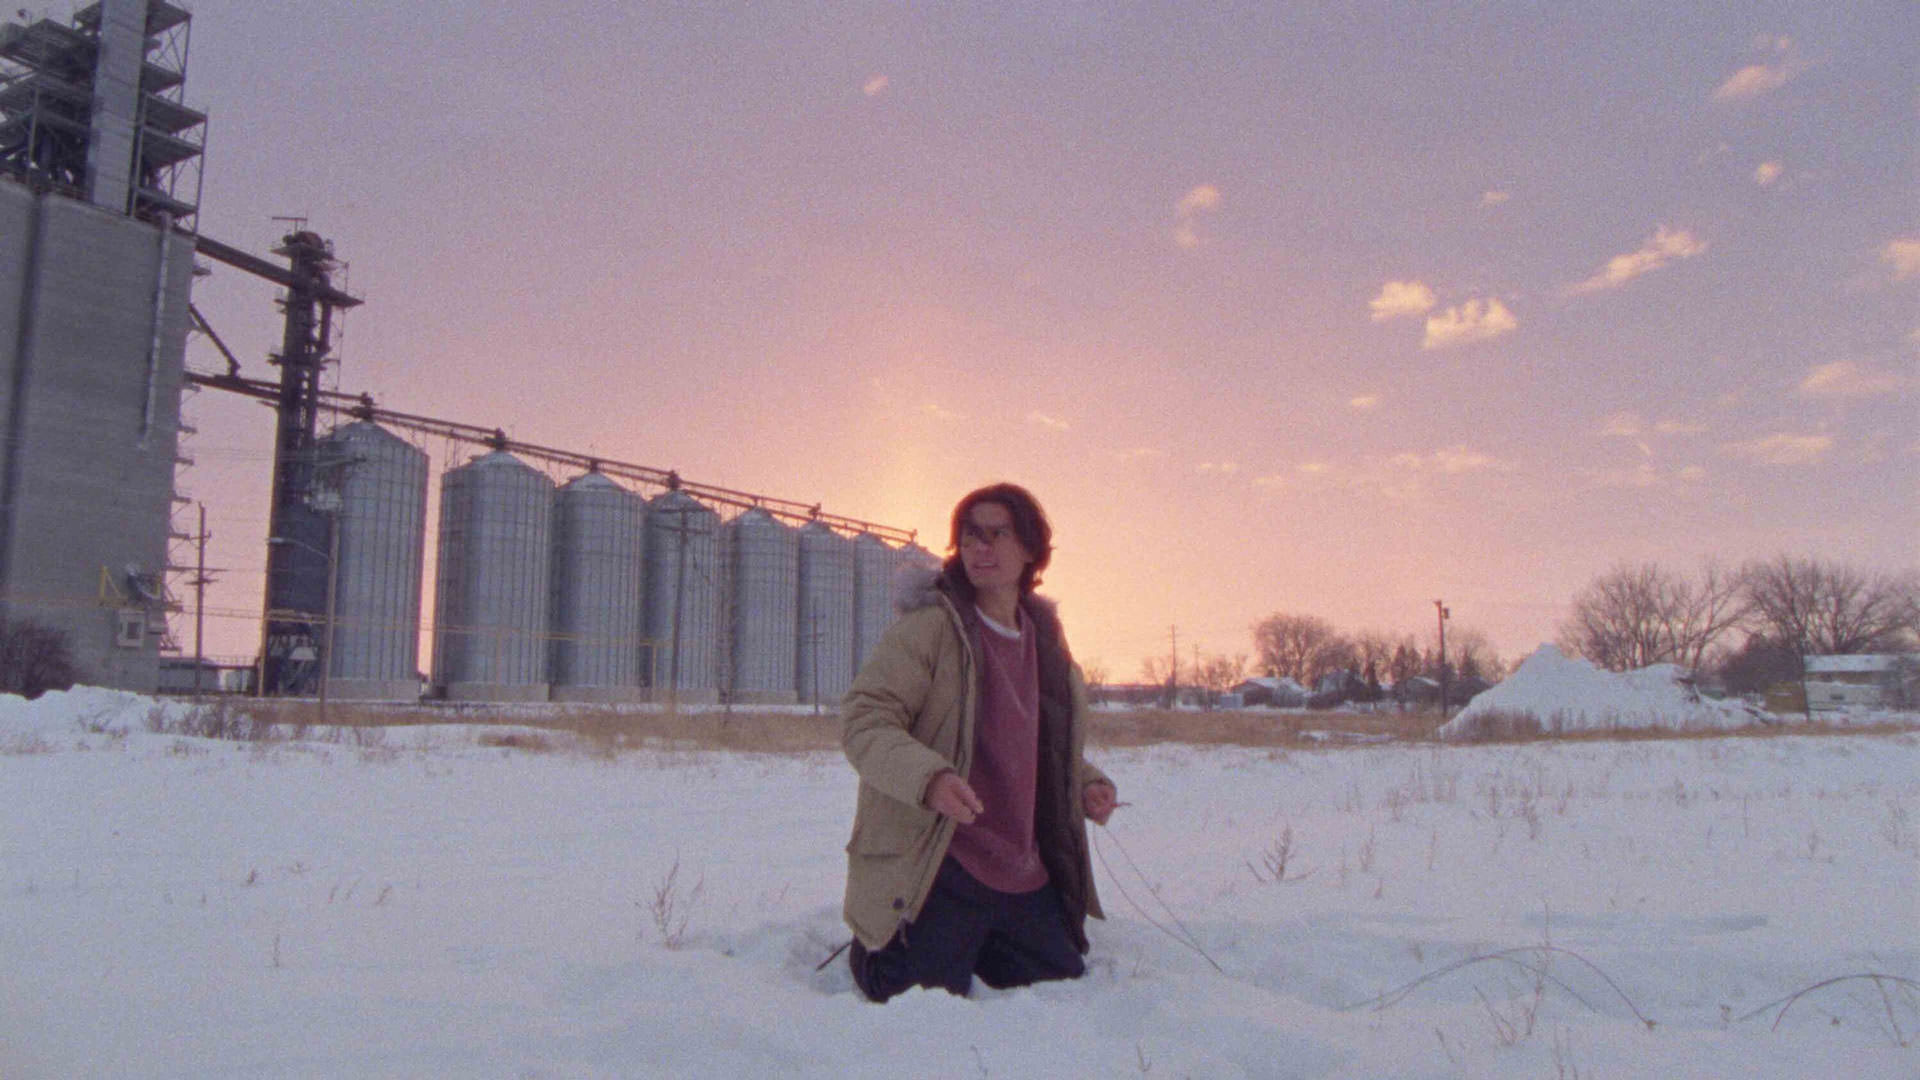 فارست گودلاک تا زانو داخل برف فرو رفته است در نمایی از فیلم چگونه یک خط لوله را منفجر کنیم به کارگردانی دنیل گولدهیبر